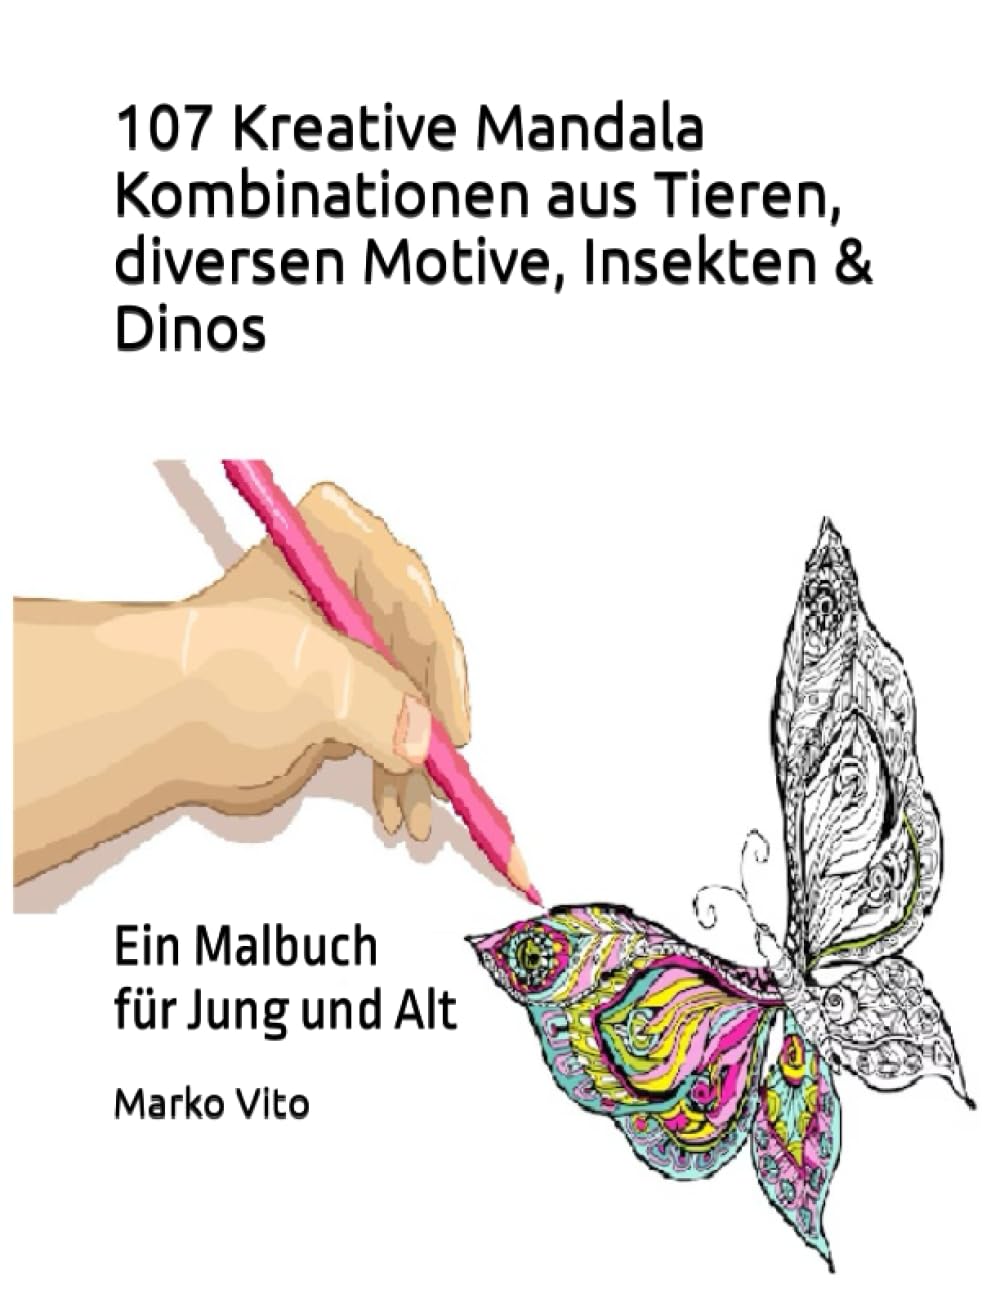 107 Kreative Mandala Kombinationen aus Tieren, diversen Motive, Insekten & Dinos: Ein Malbuch für Jung und Alt (German Edition)